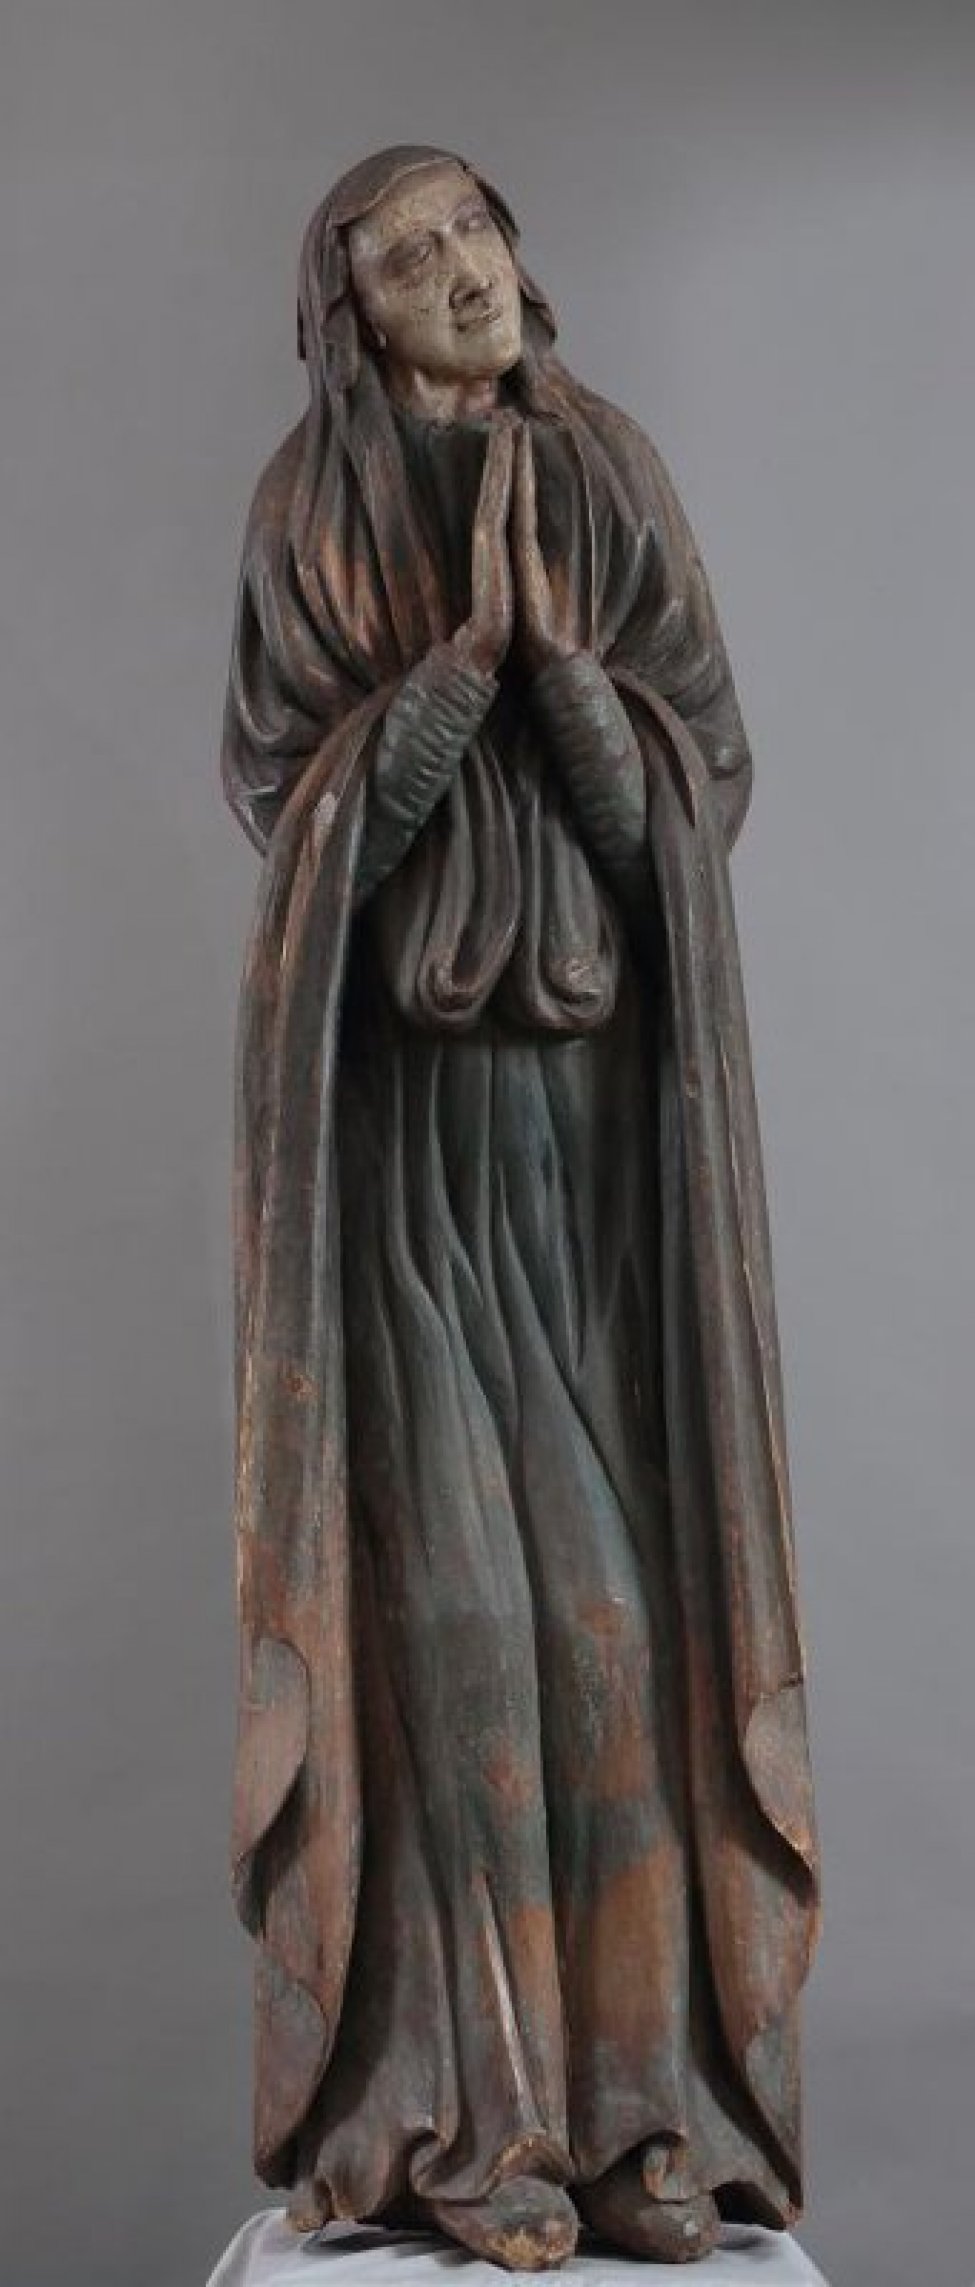 Богоматерь изображена со сложенным на груди руками, в синем хитоне и красном гиматии.